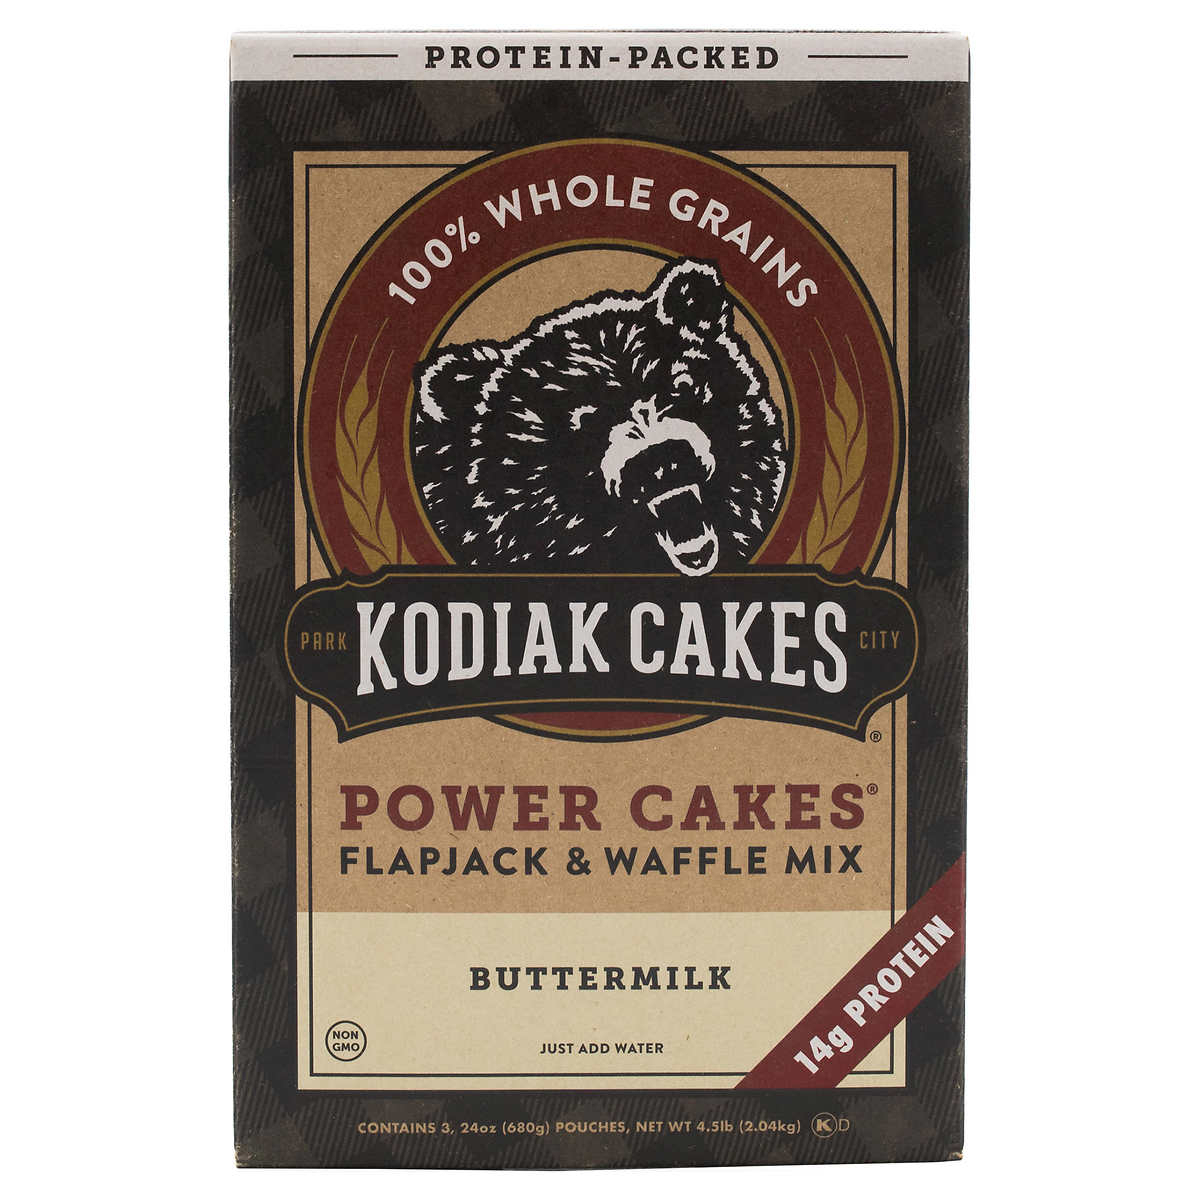 Kodiak Cakes Power Cakes Flapjack And Waffle Mix, 72 Oz